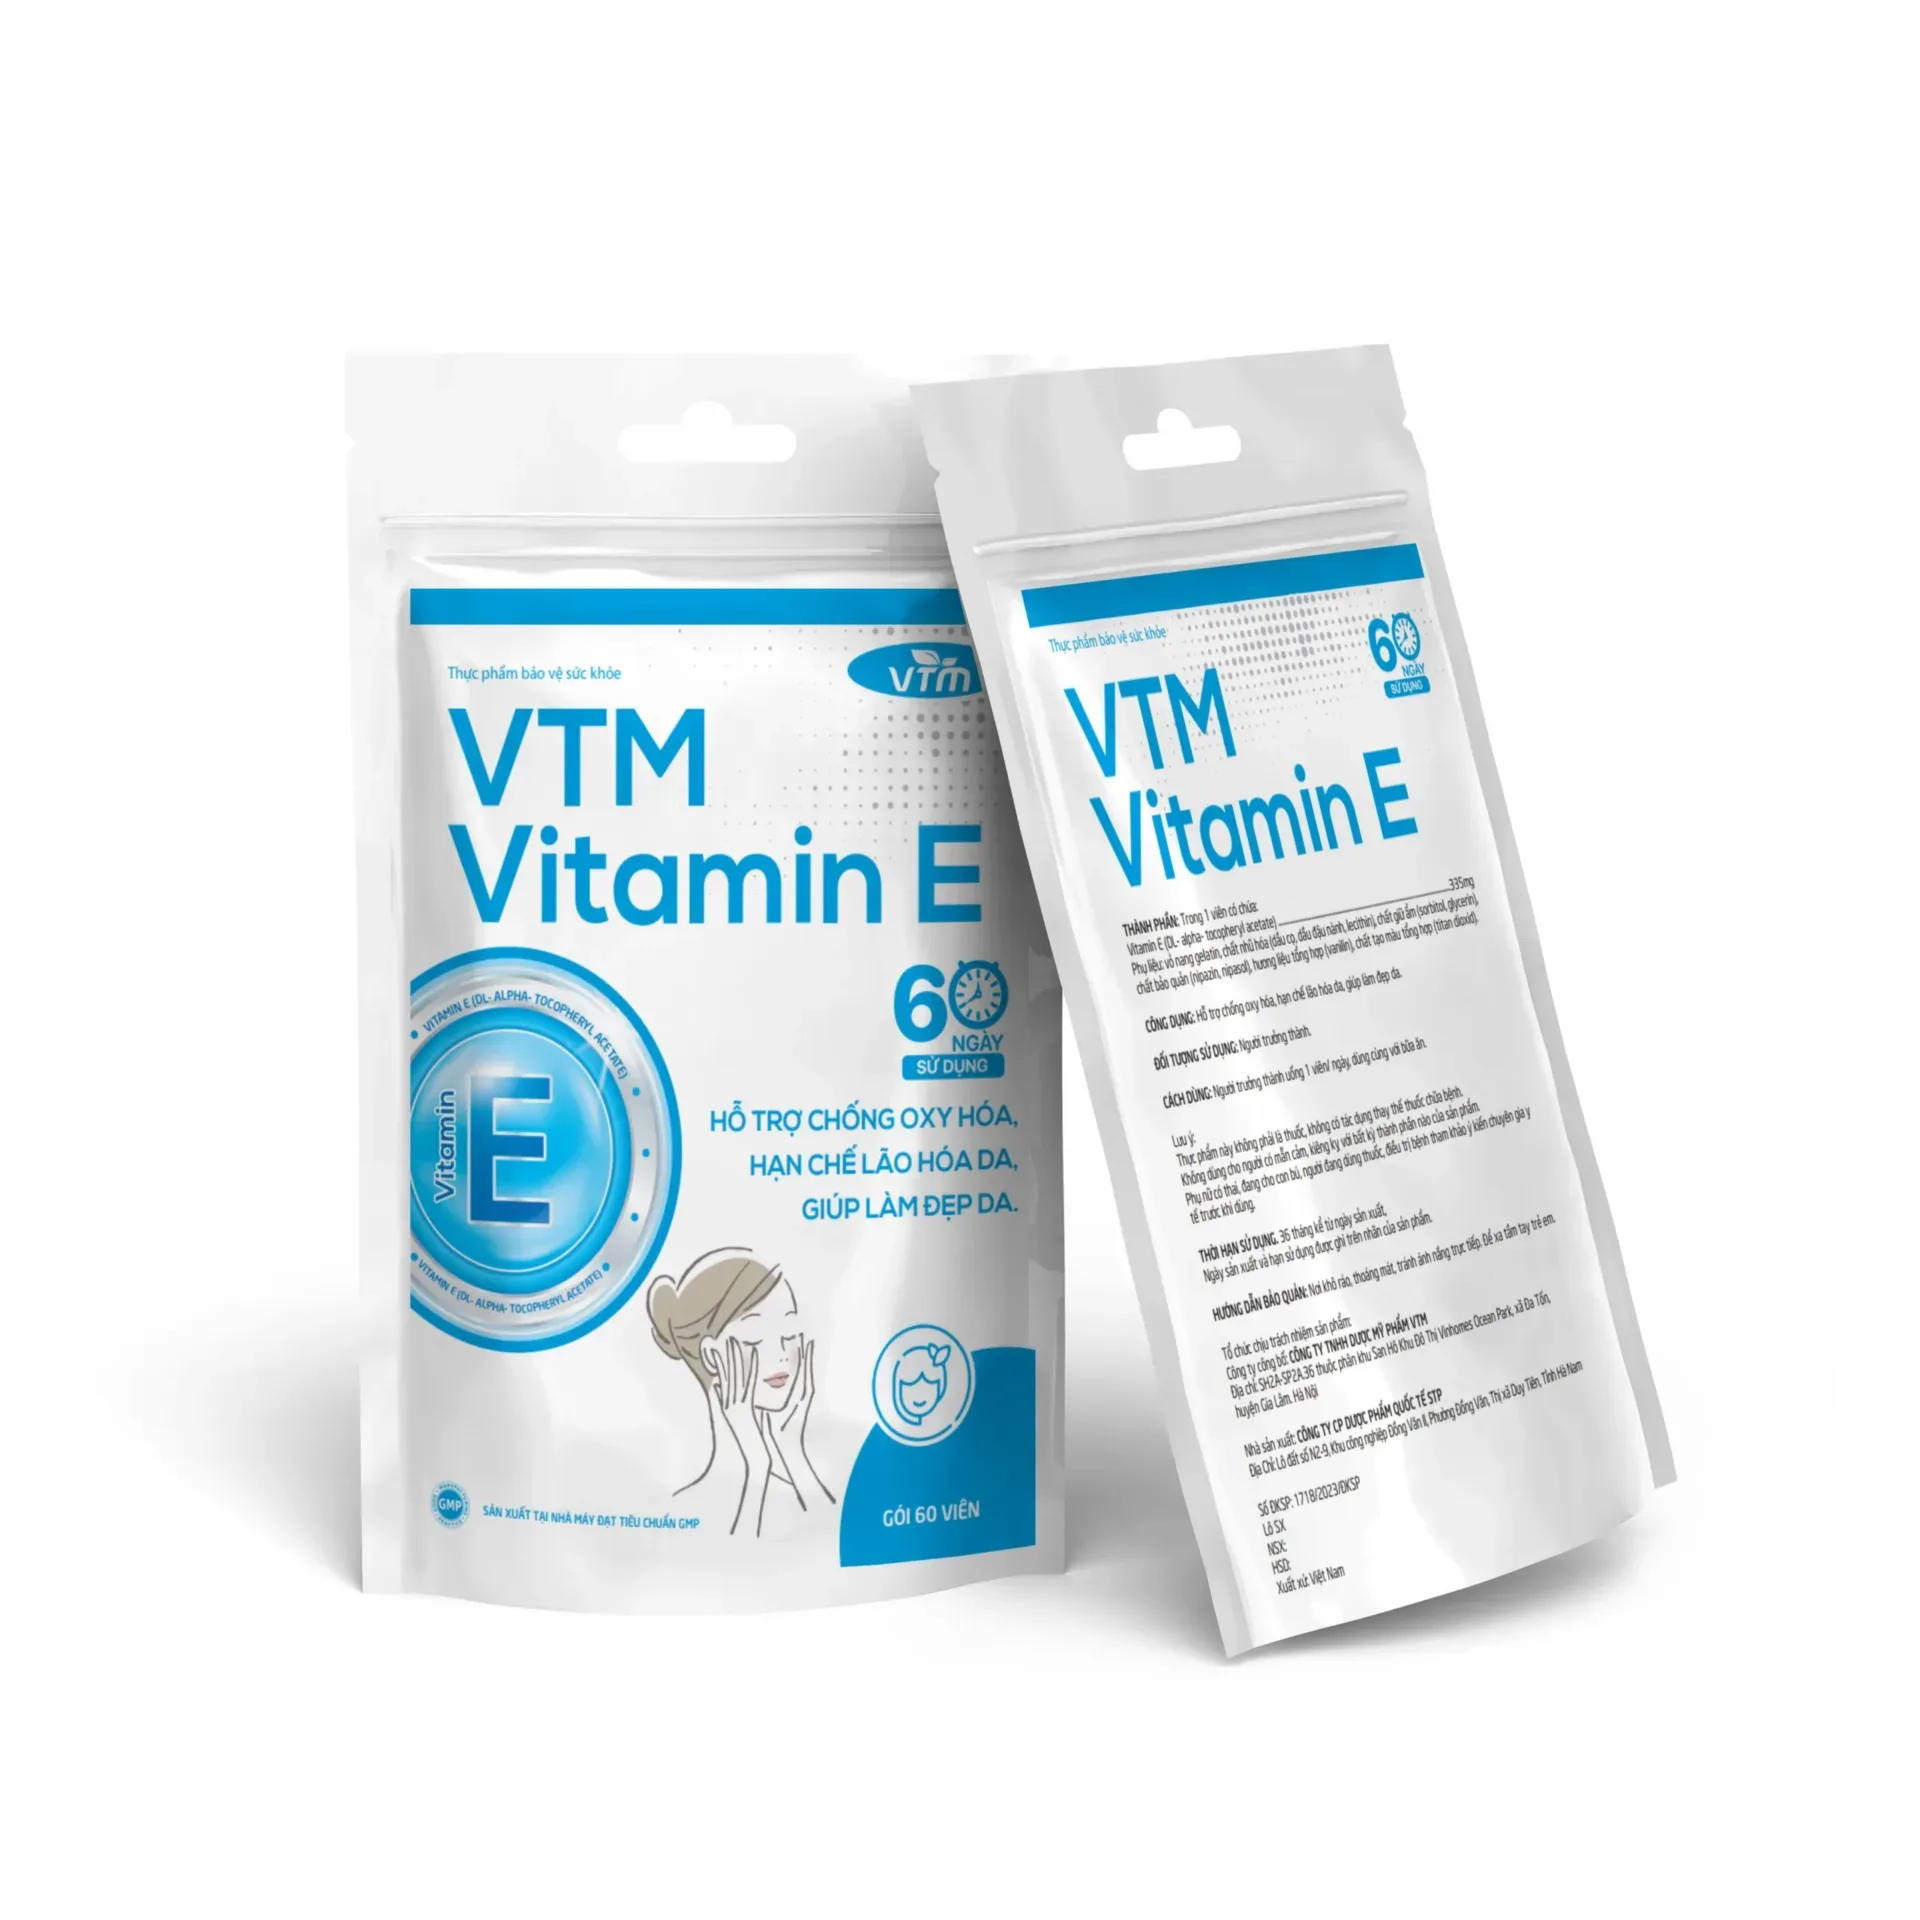 cach bo sung vitamin e 6 scaled webp Vitamin E là gì? 2 cách bổ sung vitamin E hiệu quả